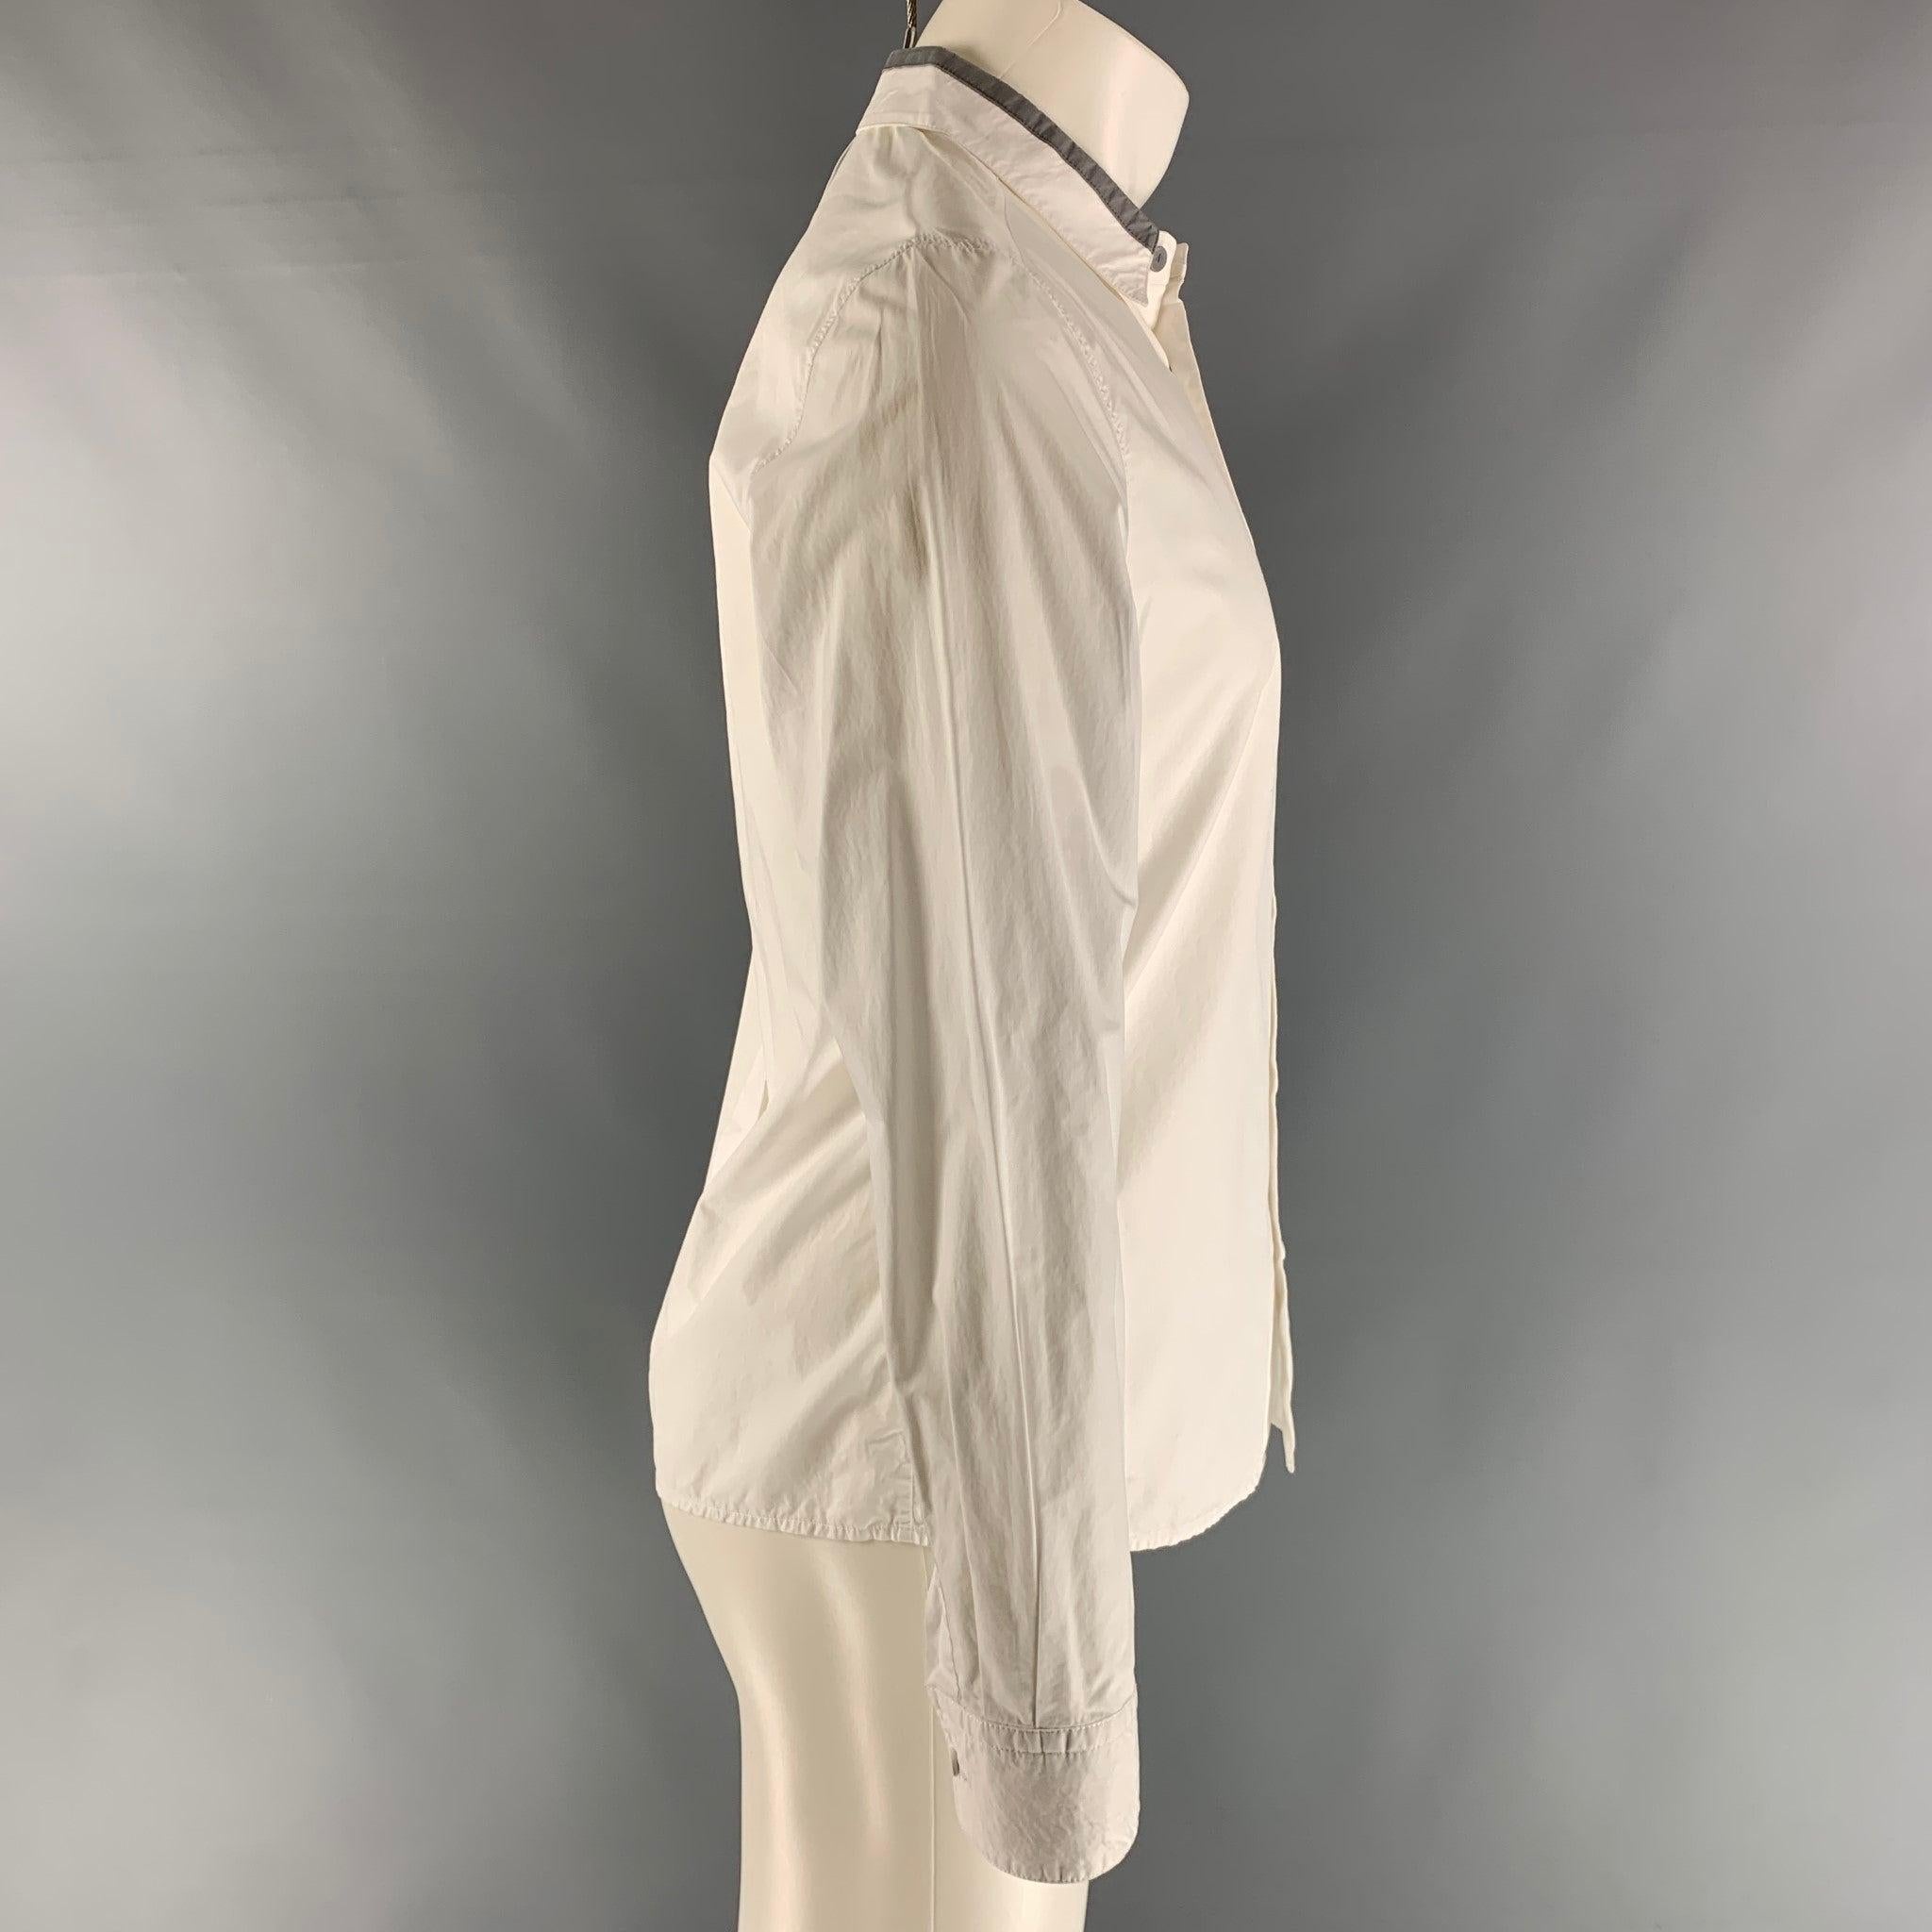 La chemise à manches longues de 3.1 PHILLIP LIM est en coton blanc et présente une fermeture boutonnée, des poignets ronds à un bouton et un col droit. Excellent état d'origine. 

Marqué :   S 

Mesures : 
 
Épaule : 18 pouces  Poitrine : 42 pouces 